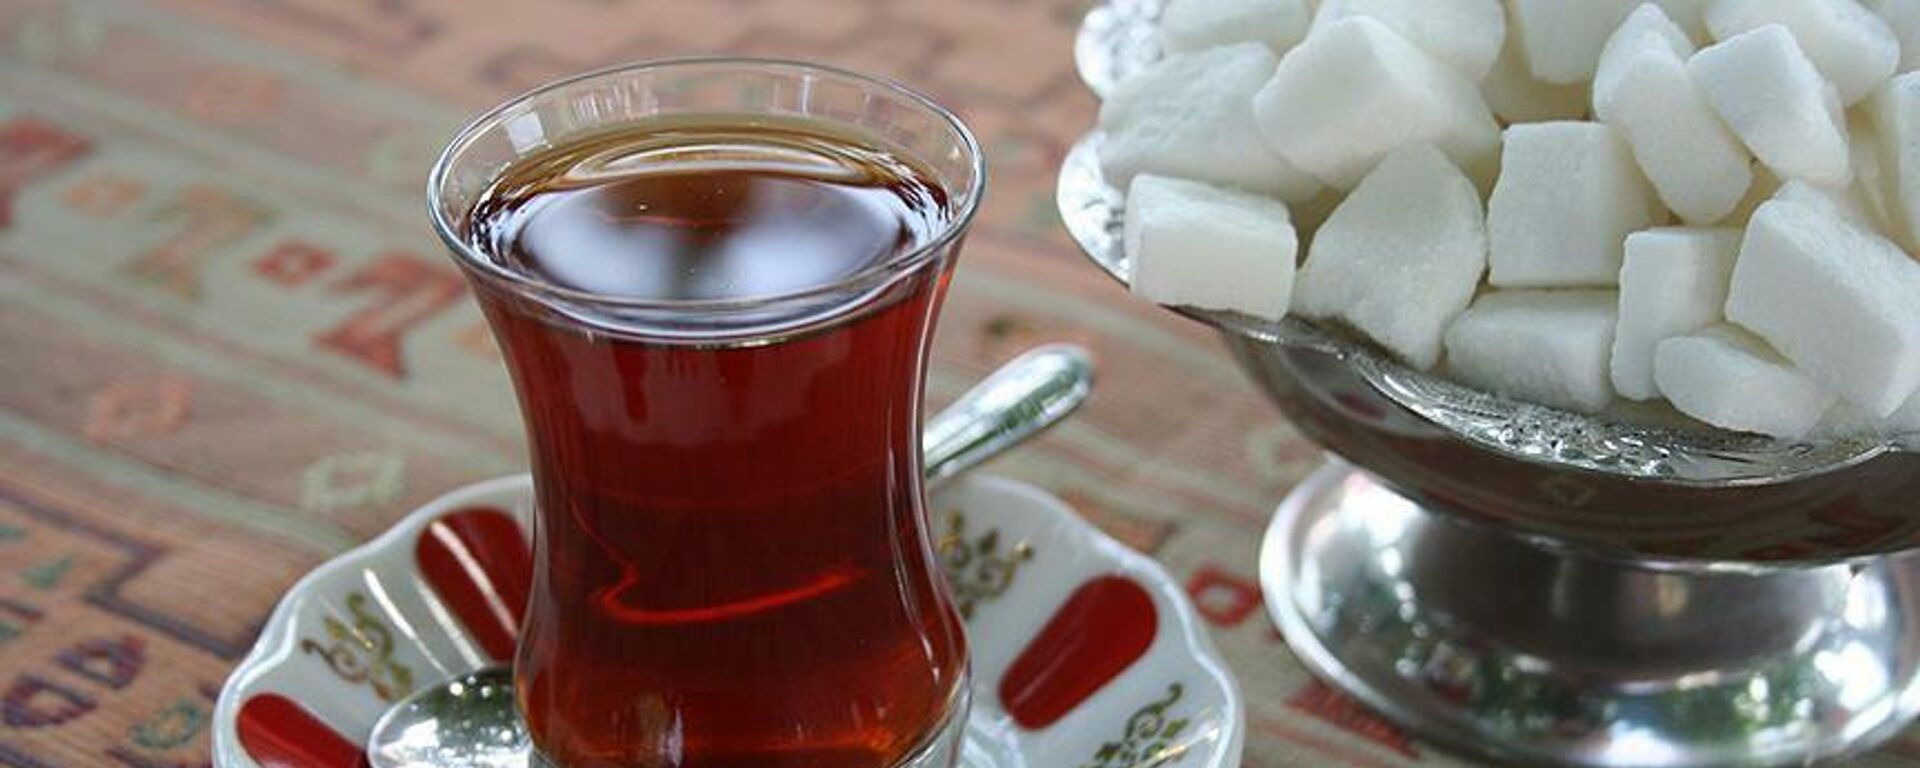 Çay bardağı, kıtlama şeker, ince belli bardak - Sputnik Türkiye, 1920, 15.12.2021